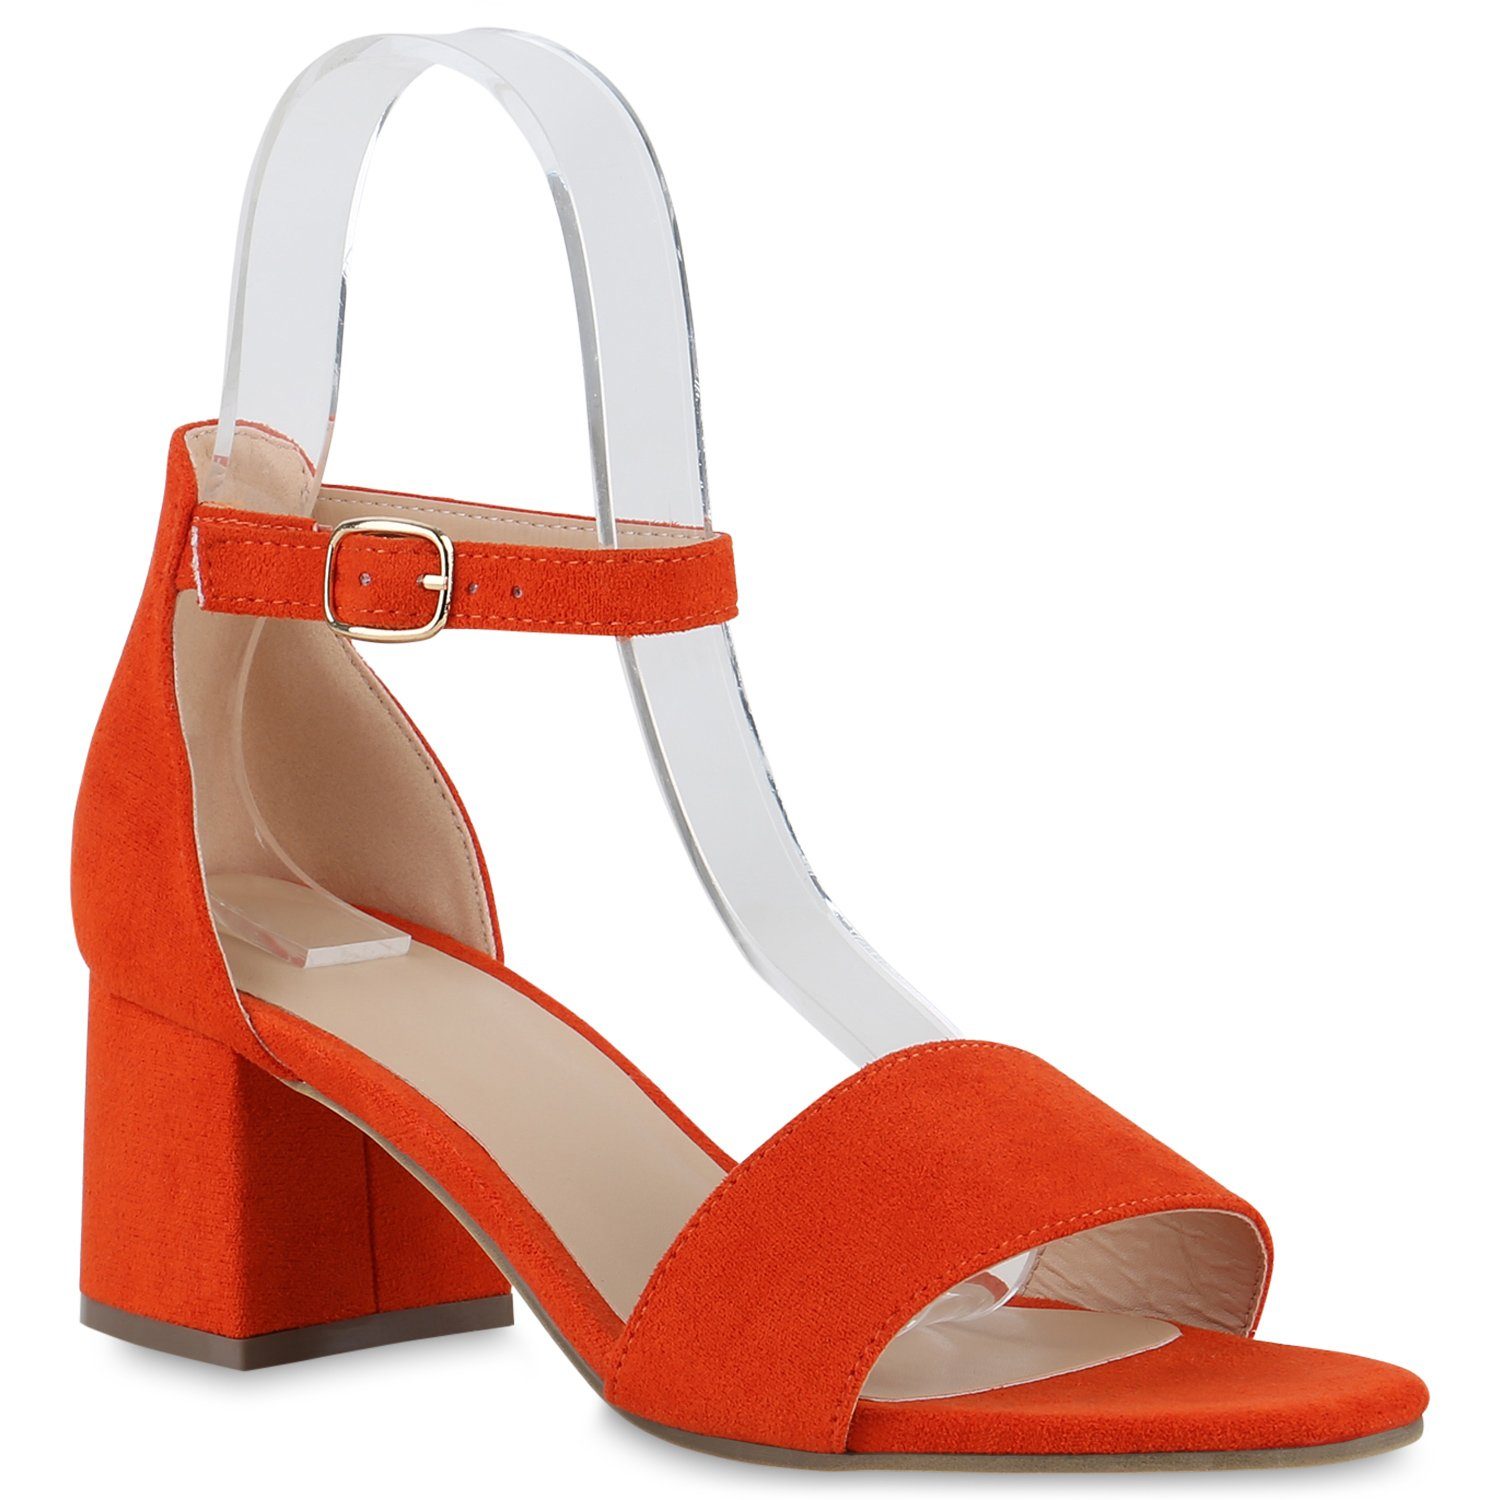 VAN HILL 837601 Sandalette Schuhe Orange Velours